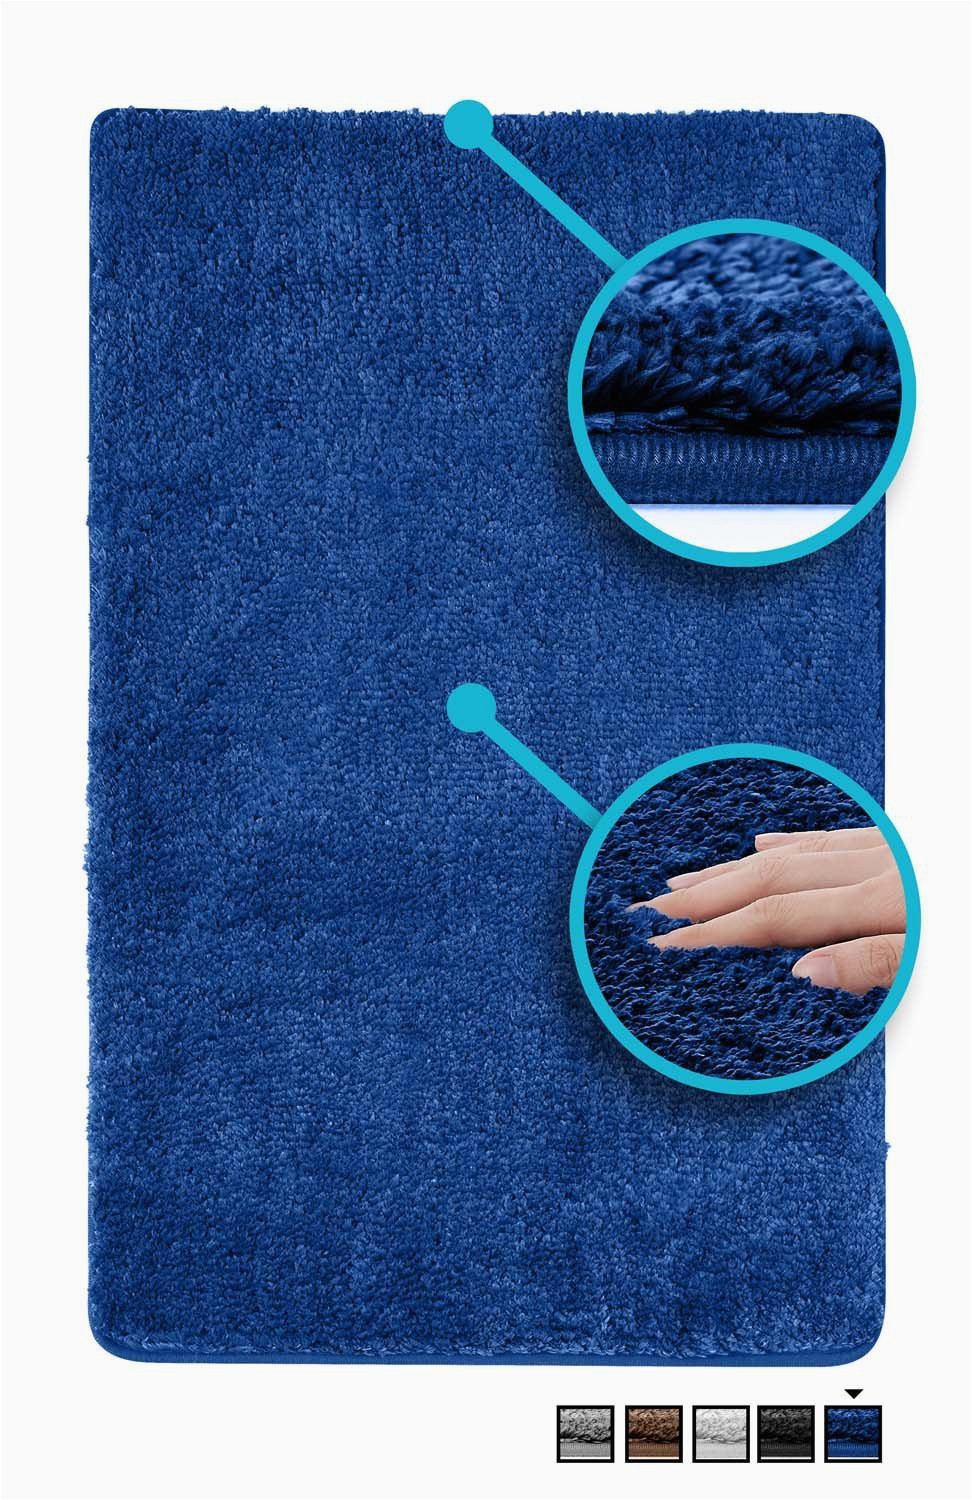 luxe bath mat bath rug non slip backing microfiber microdry bath mat 19 5 x 31 5 in brown